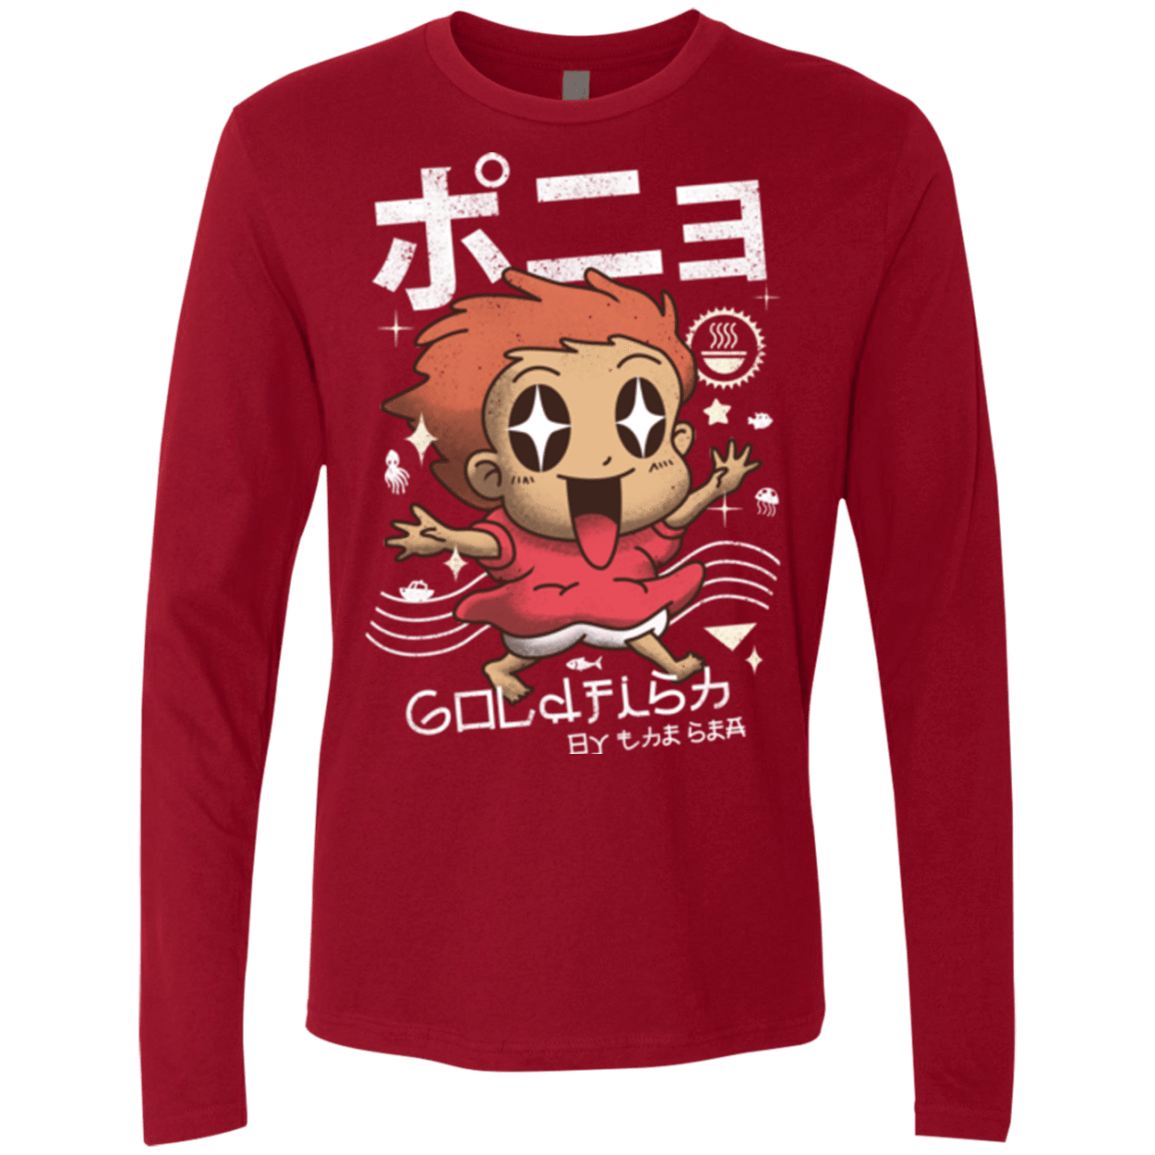 T-Shirts Cardinal / Small Kawaii Gold Fish Men's Premium Long Sleeve